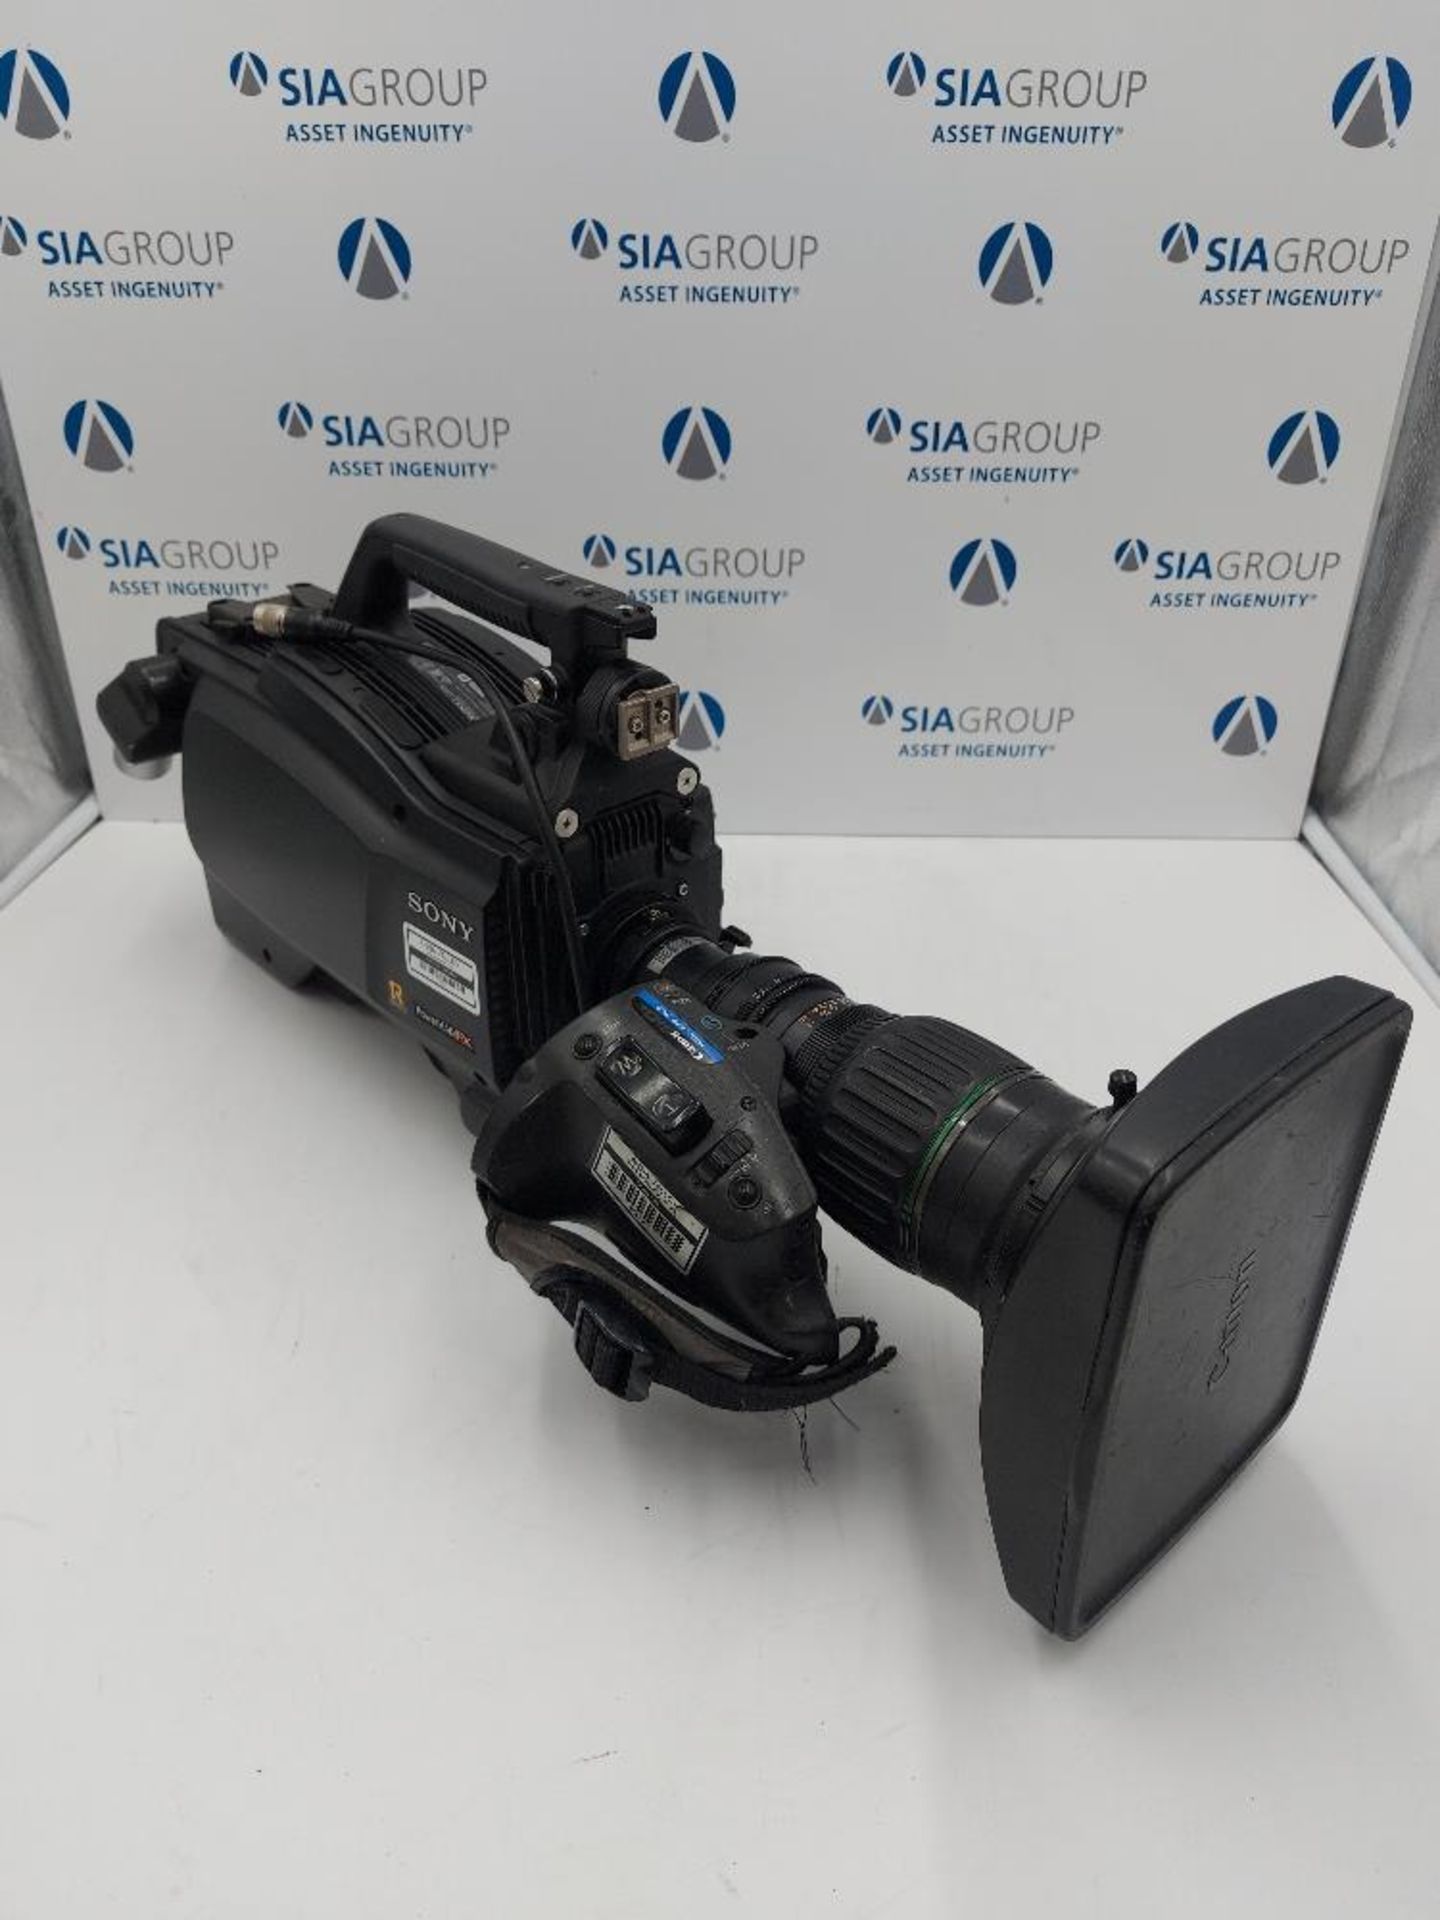 Sony HSC-100 Studio Camera Kit